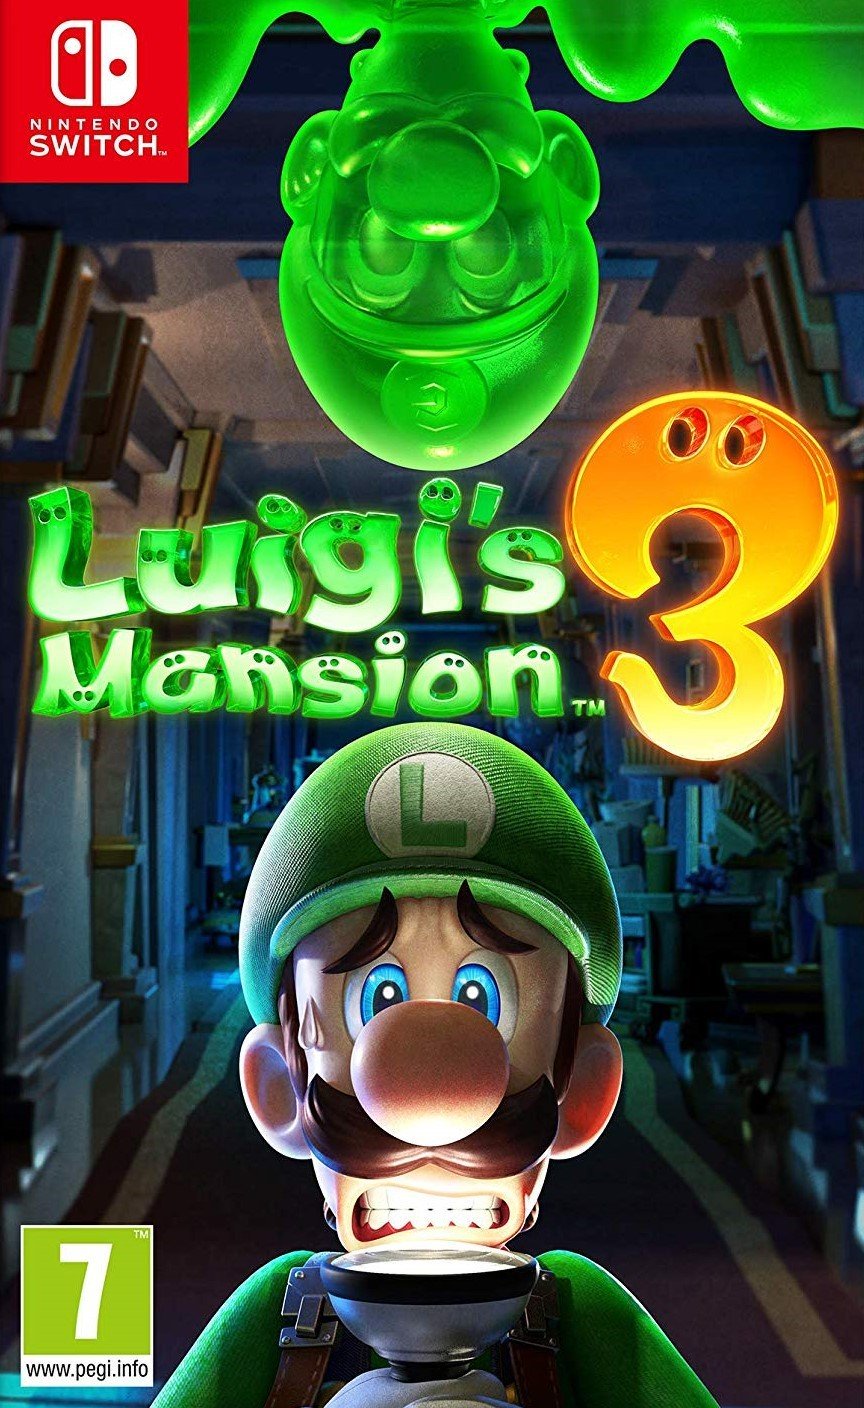 Luigi's Mansion 3 (UK, SE, DK, FI) - Videospill og konsoller